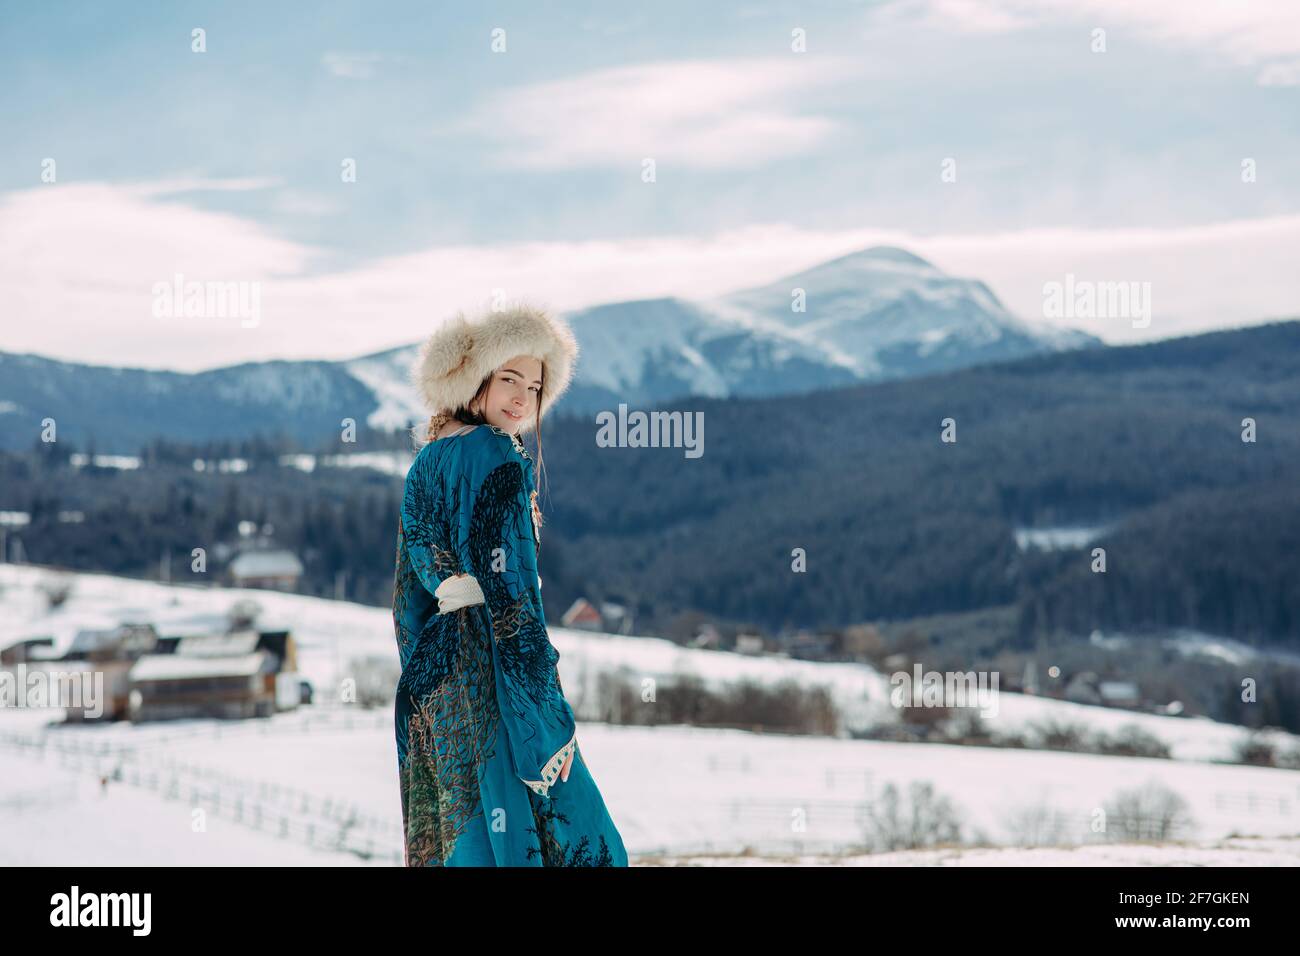 La giovane donna cammina vestita di cappello di pelliccia e vestirsi contro il bellissimo paesaggio di montagne, cielo e villaggio dei Carpazi innevati. Foto Stock